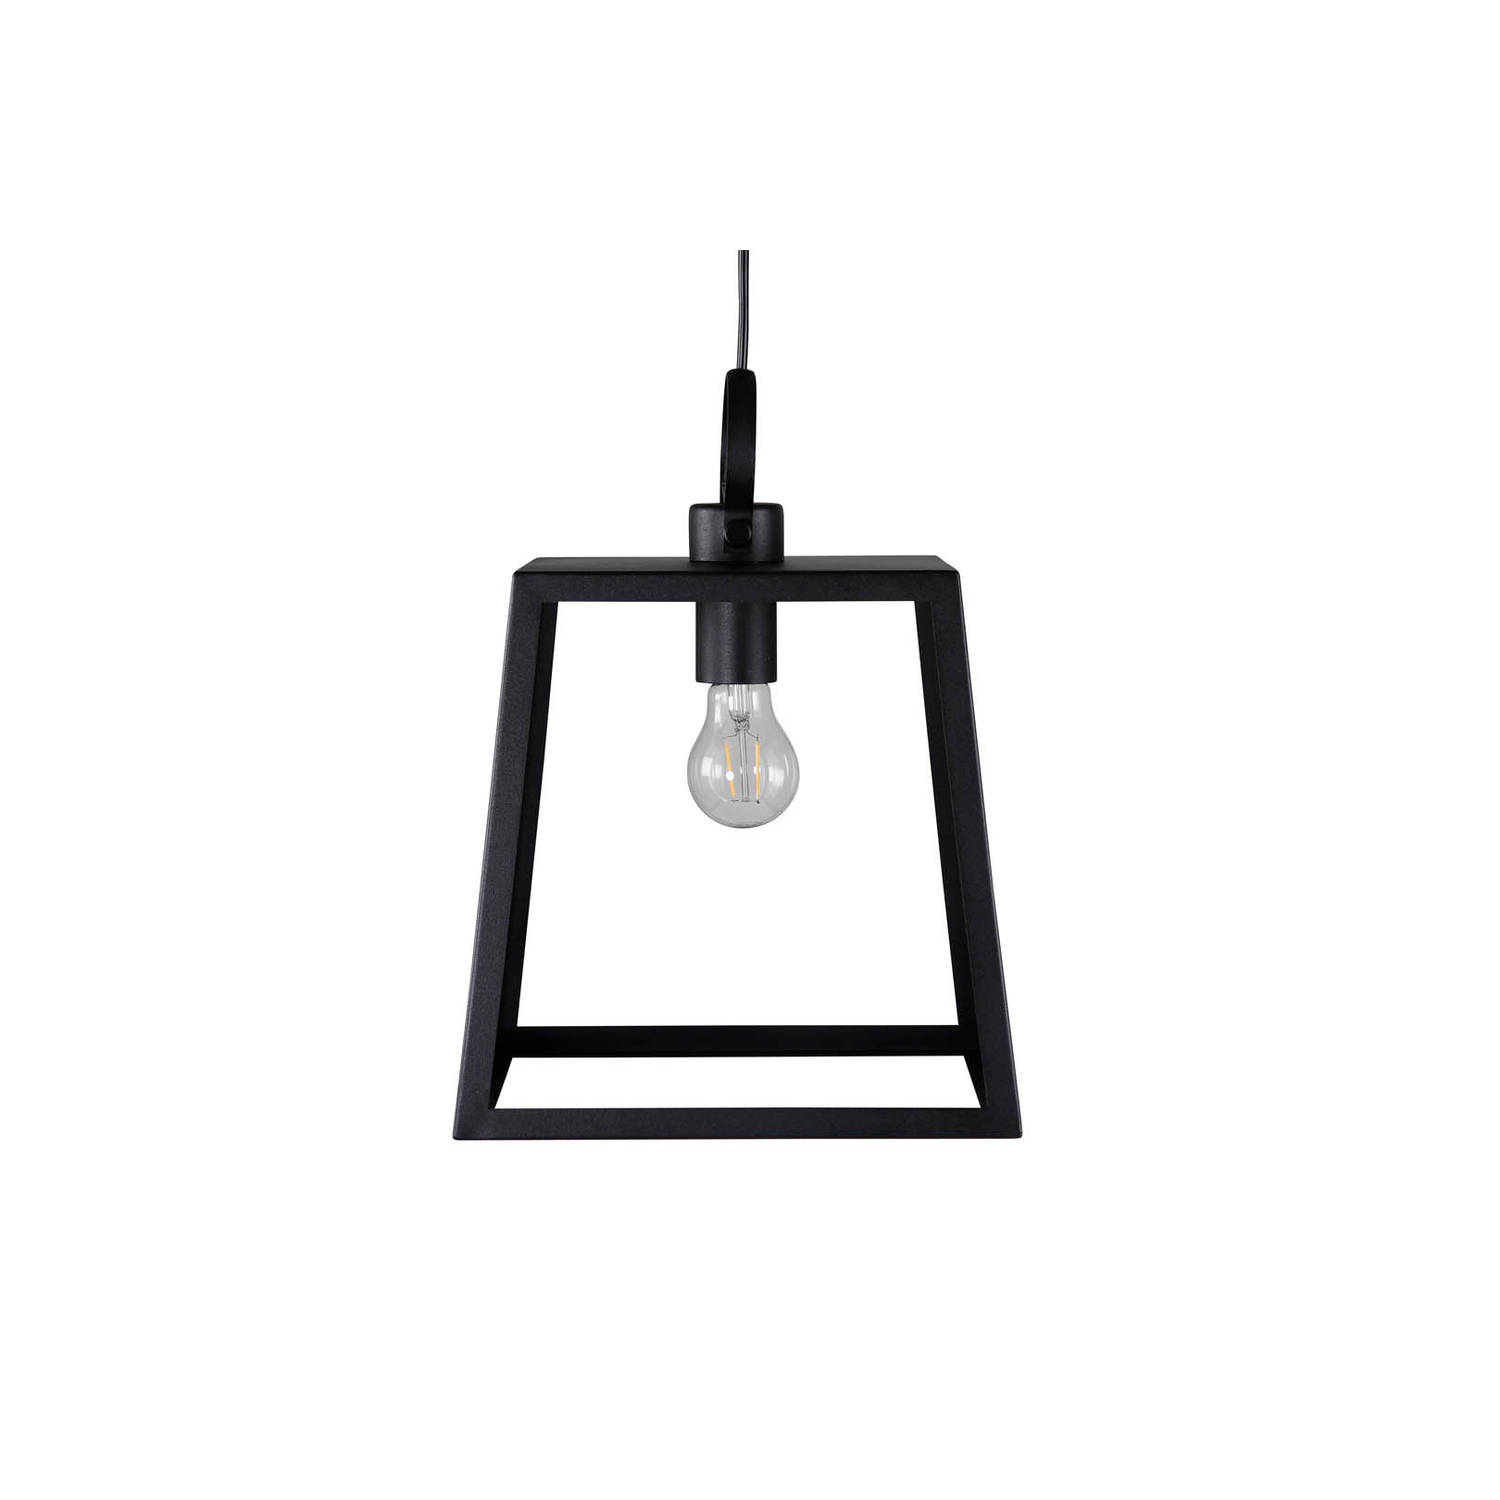 Hioshop Hage verlichting hanglamp 28x28x37,5cm staal zwart.